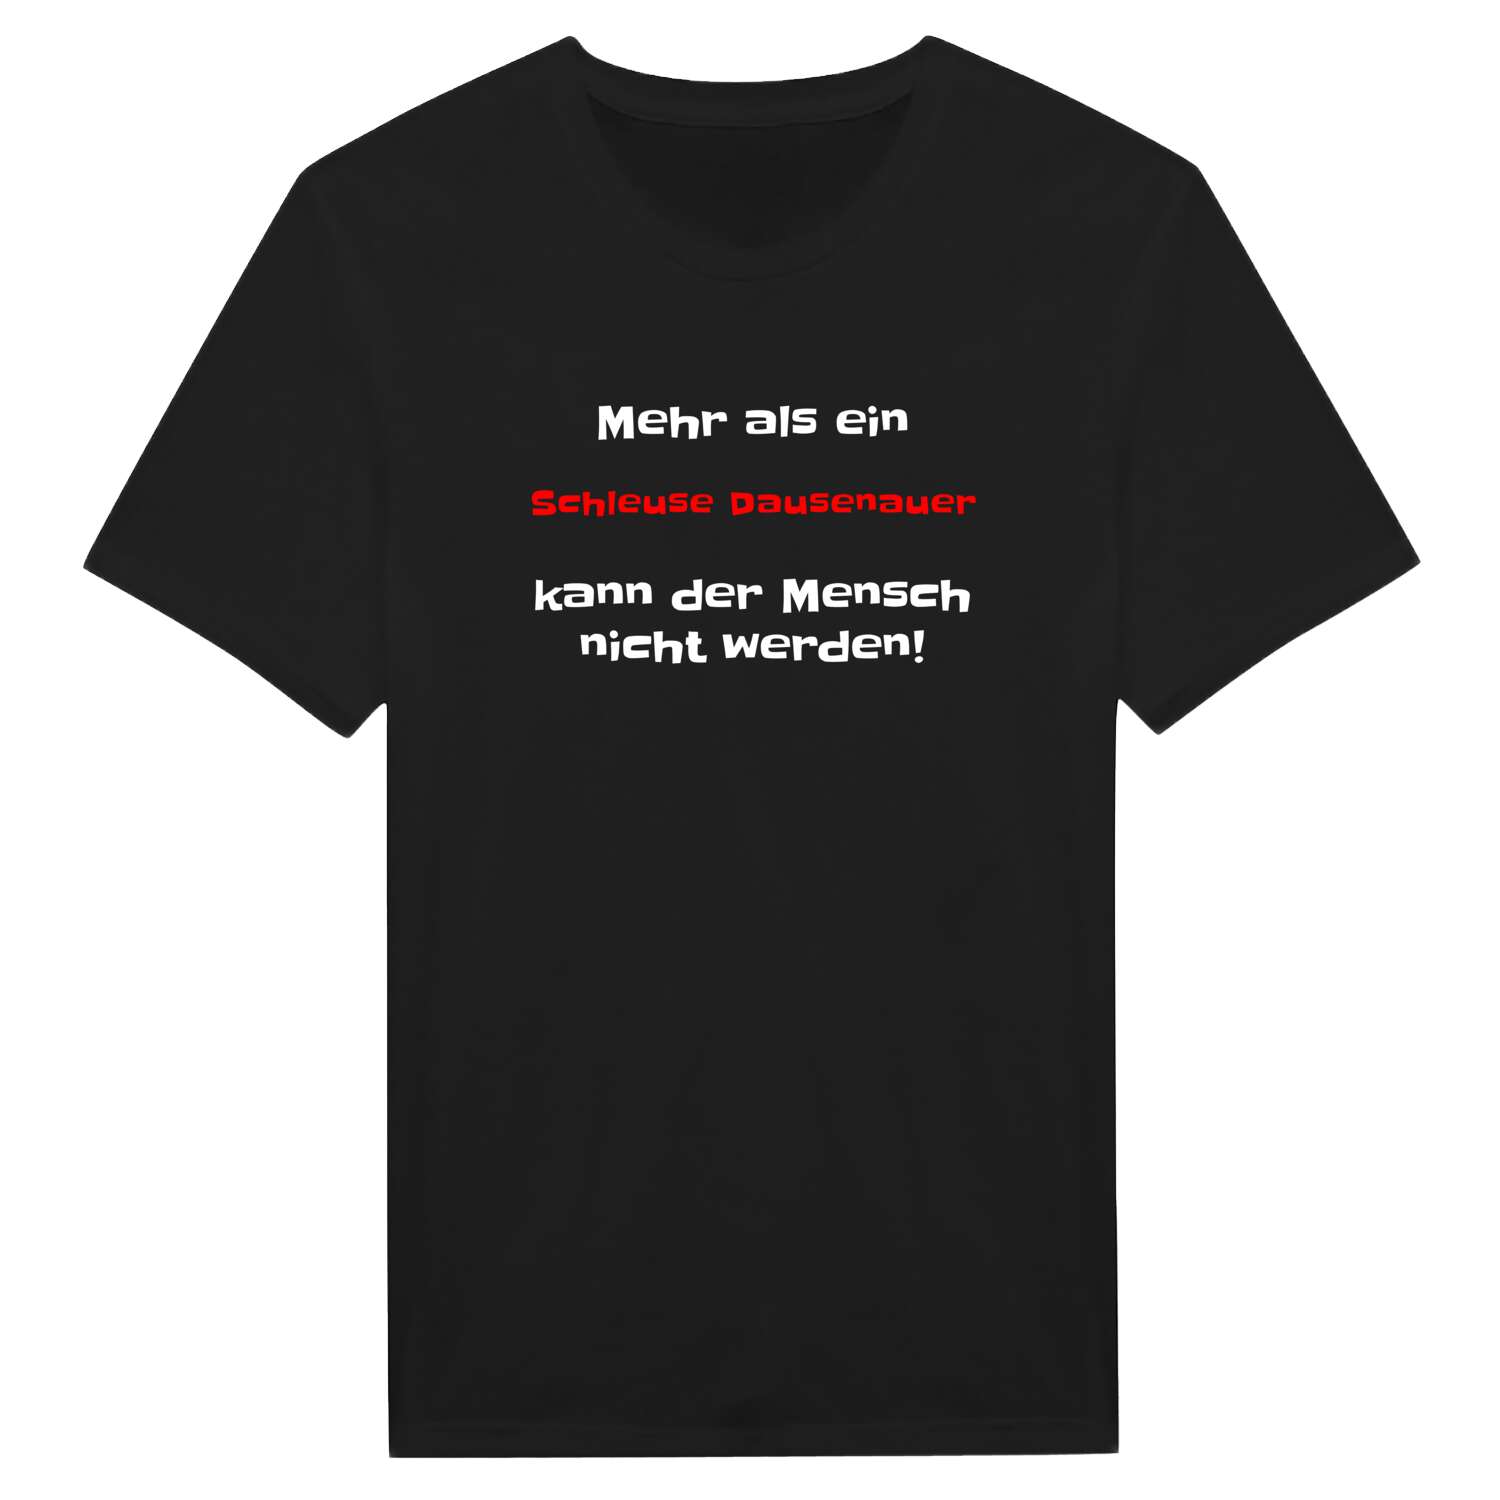 Schleuse Dausenau T-Shirt »Mehr als ein«